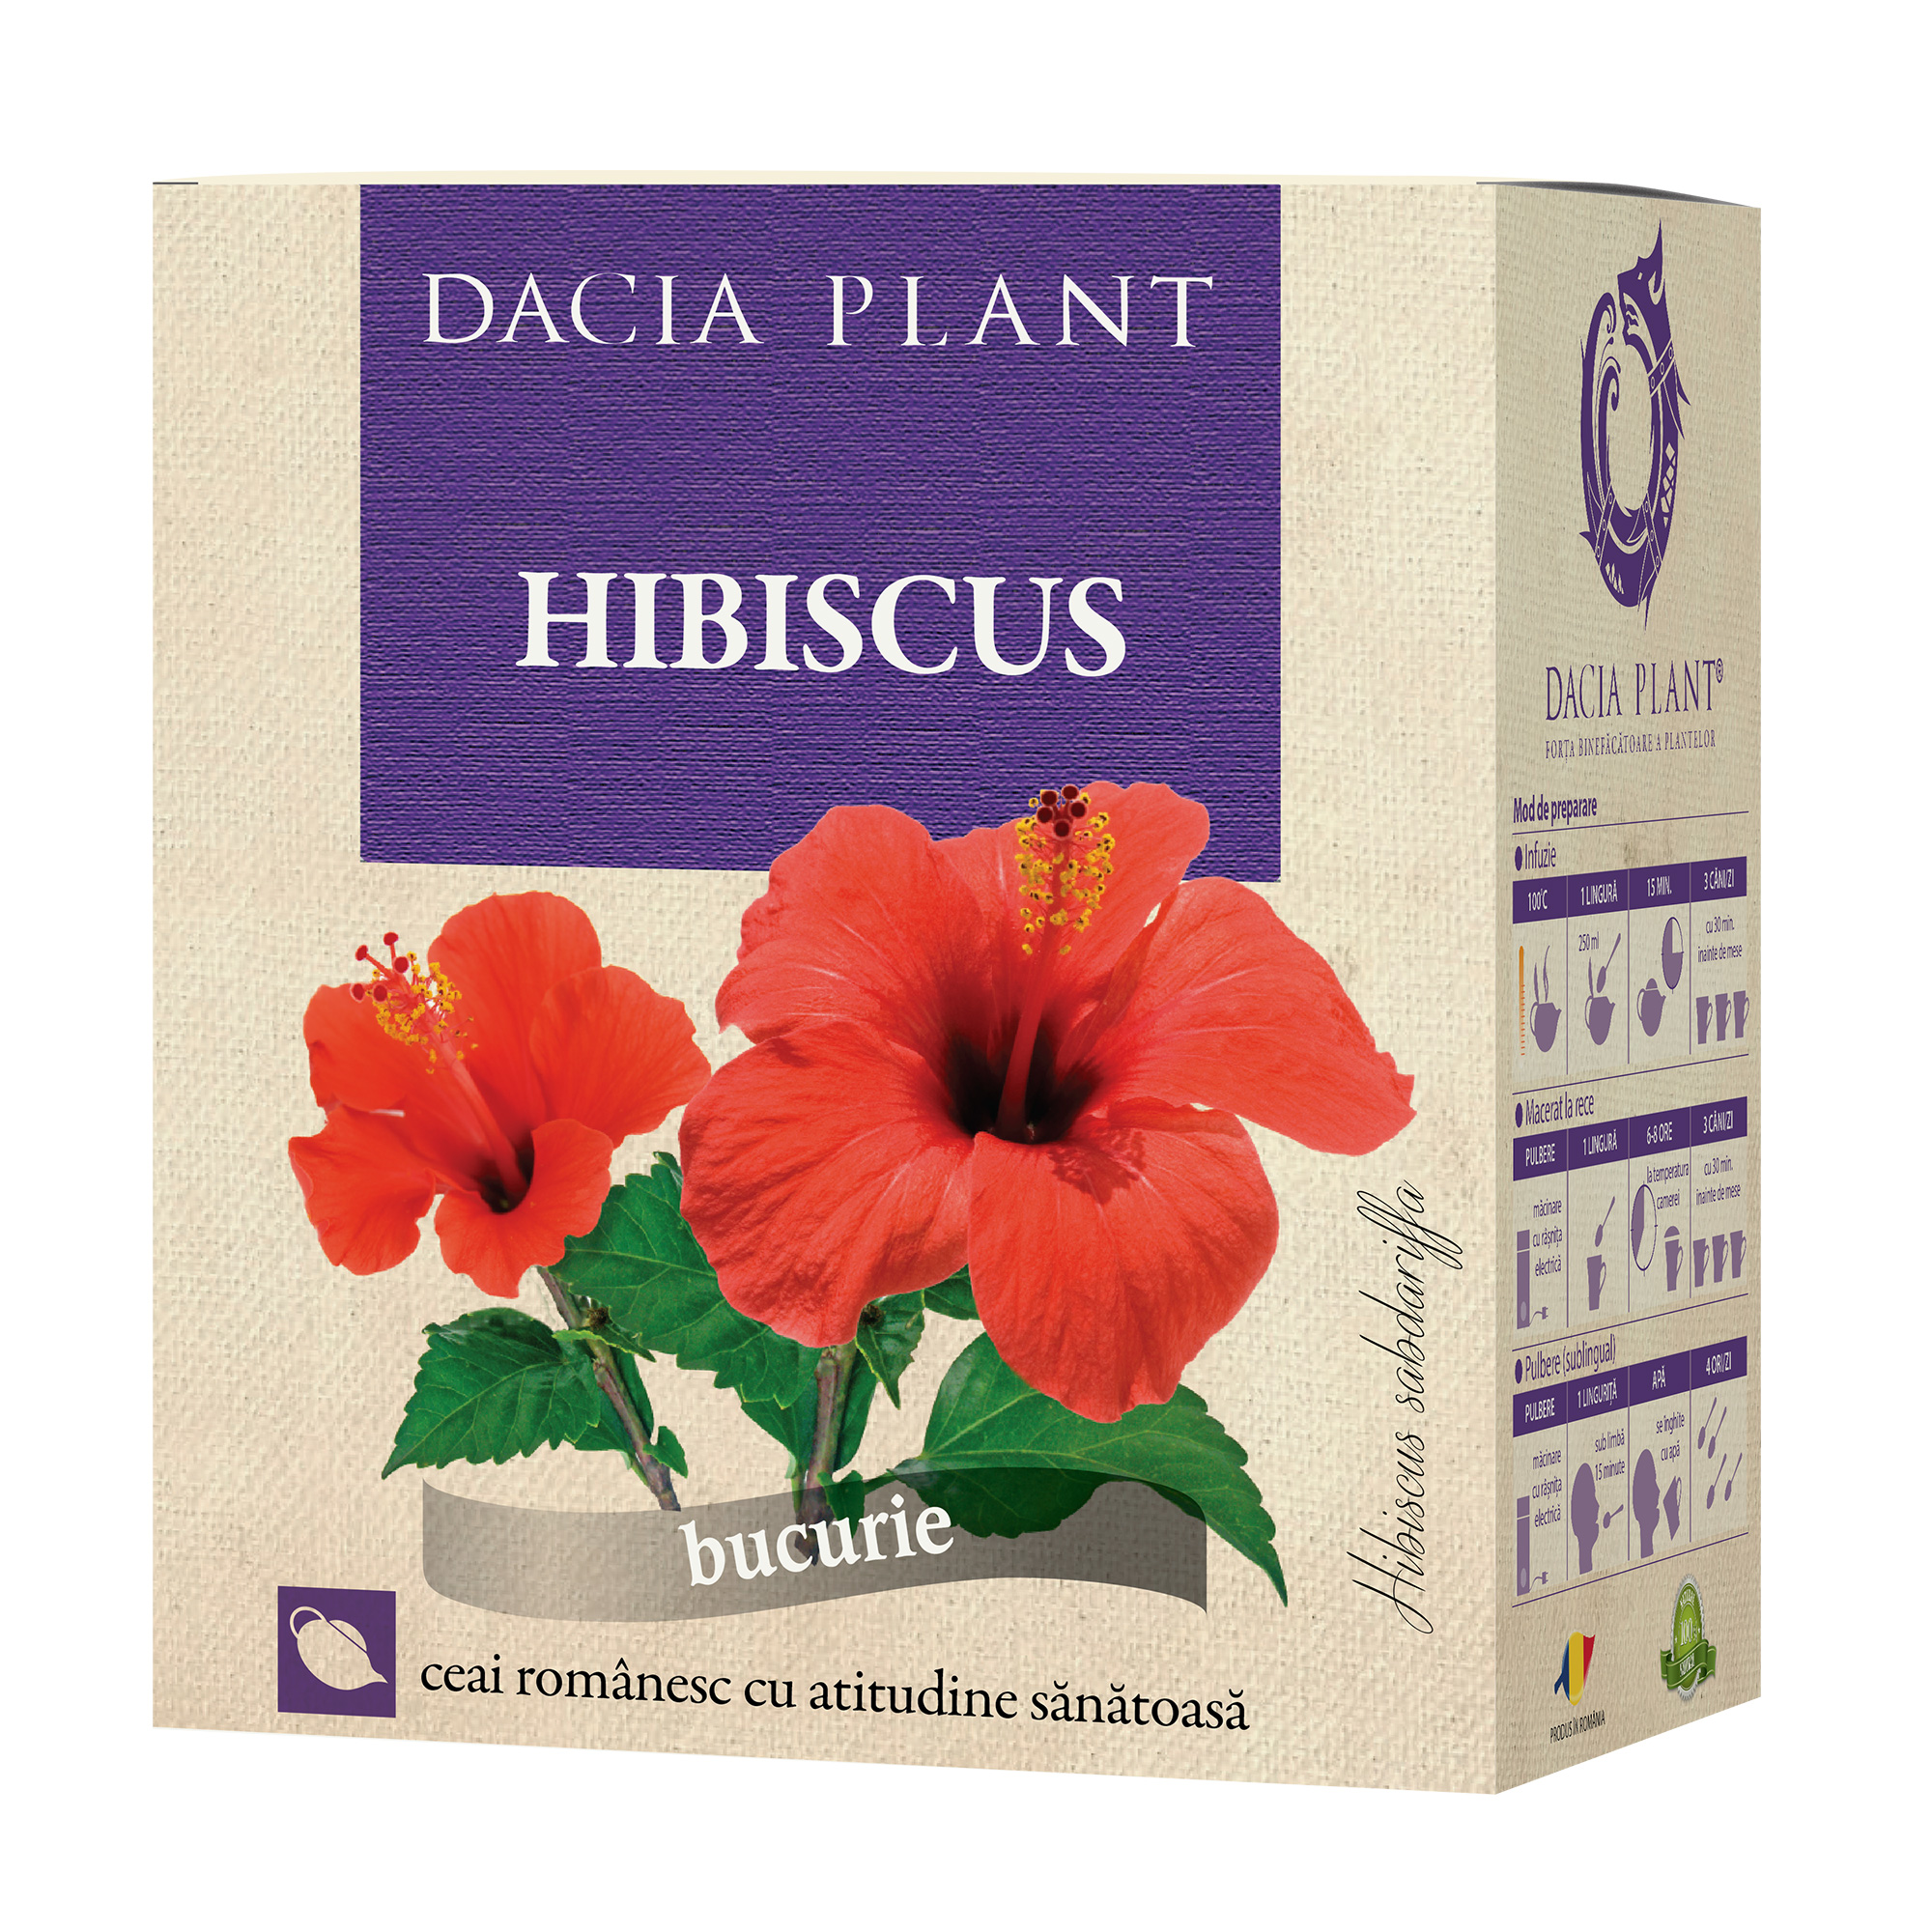 Hibiscus pentru slăbire - Opinia mea!: Cum am slabit eu cu ceaiuri 3 kg in 2 saptamani